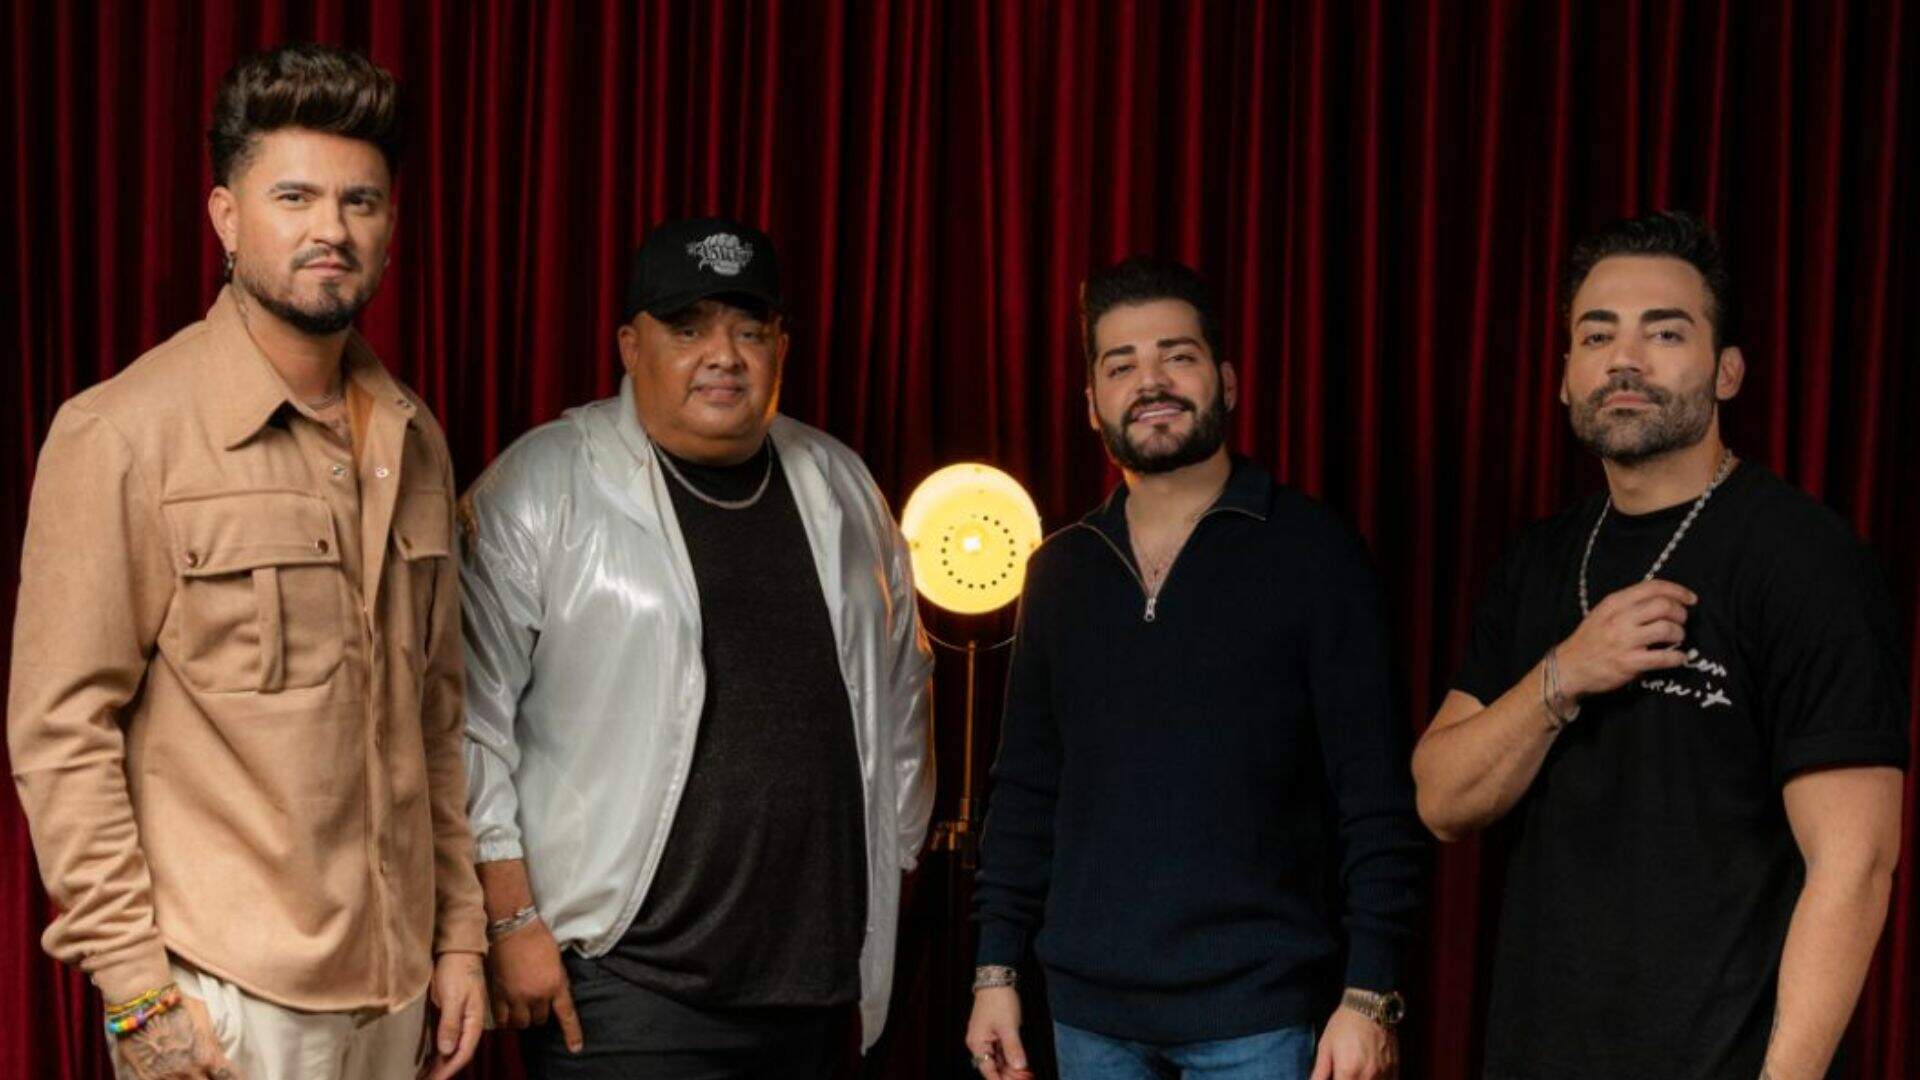 Humberto & Ronaldo liberam single com Guilherme & Benuto, “Pretinha”